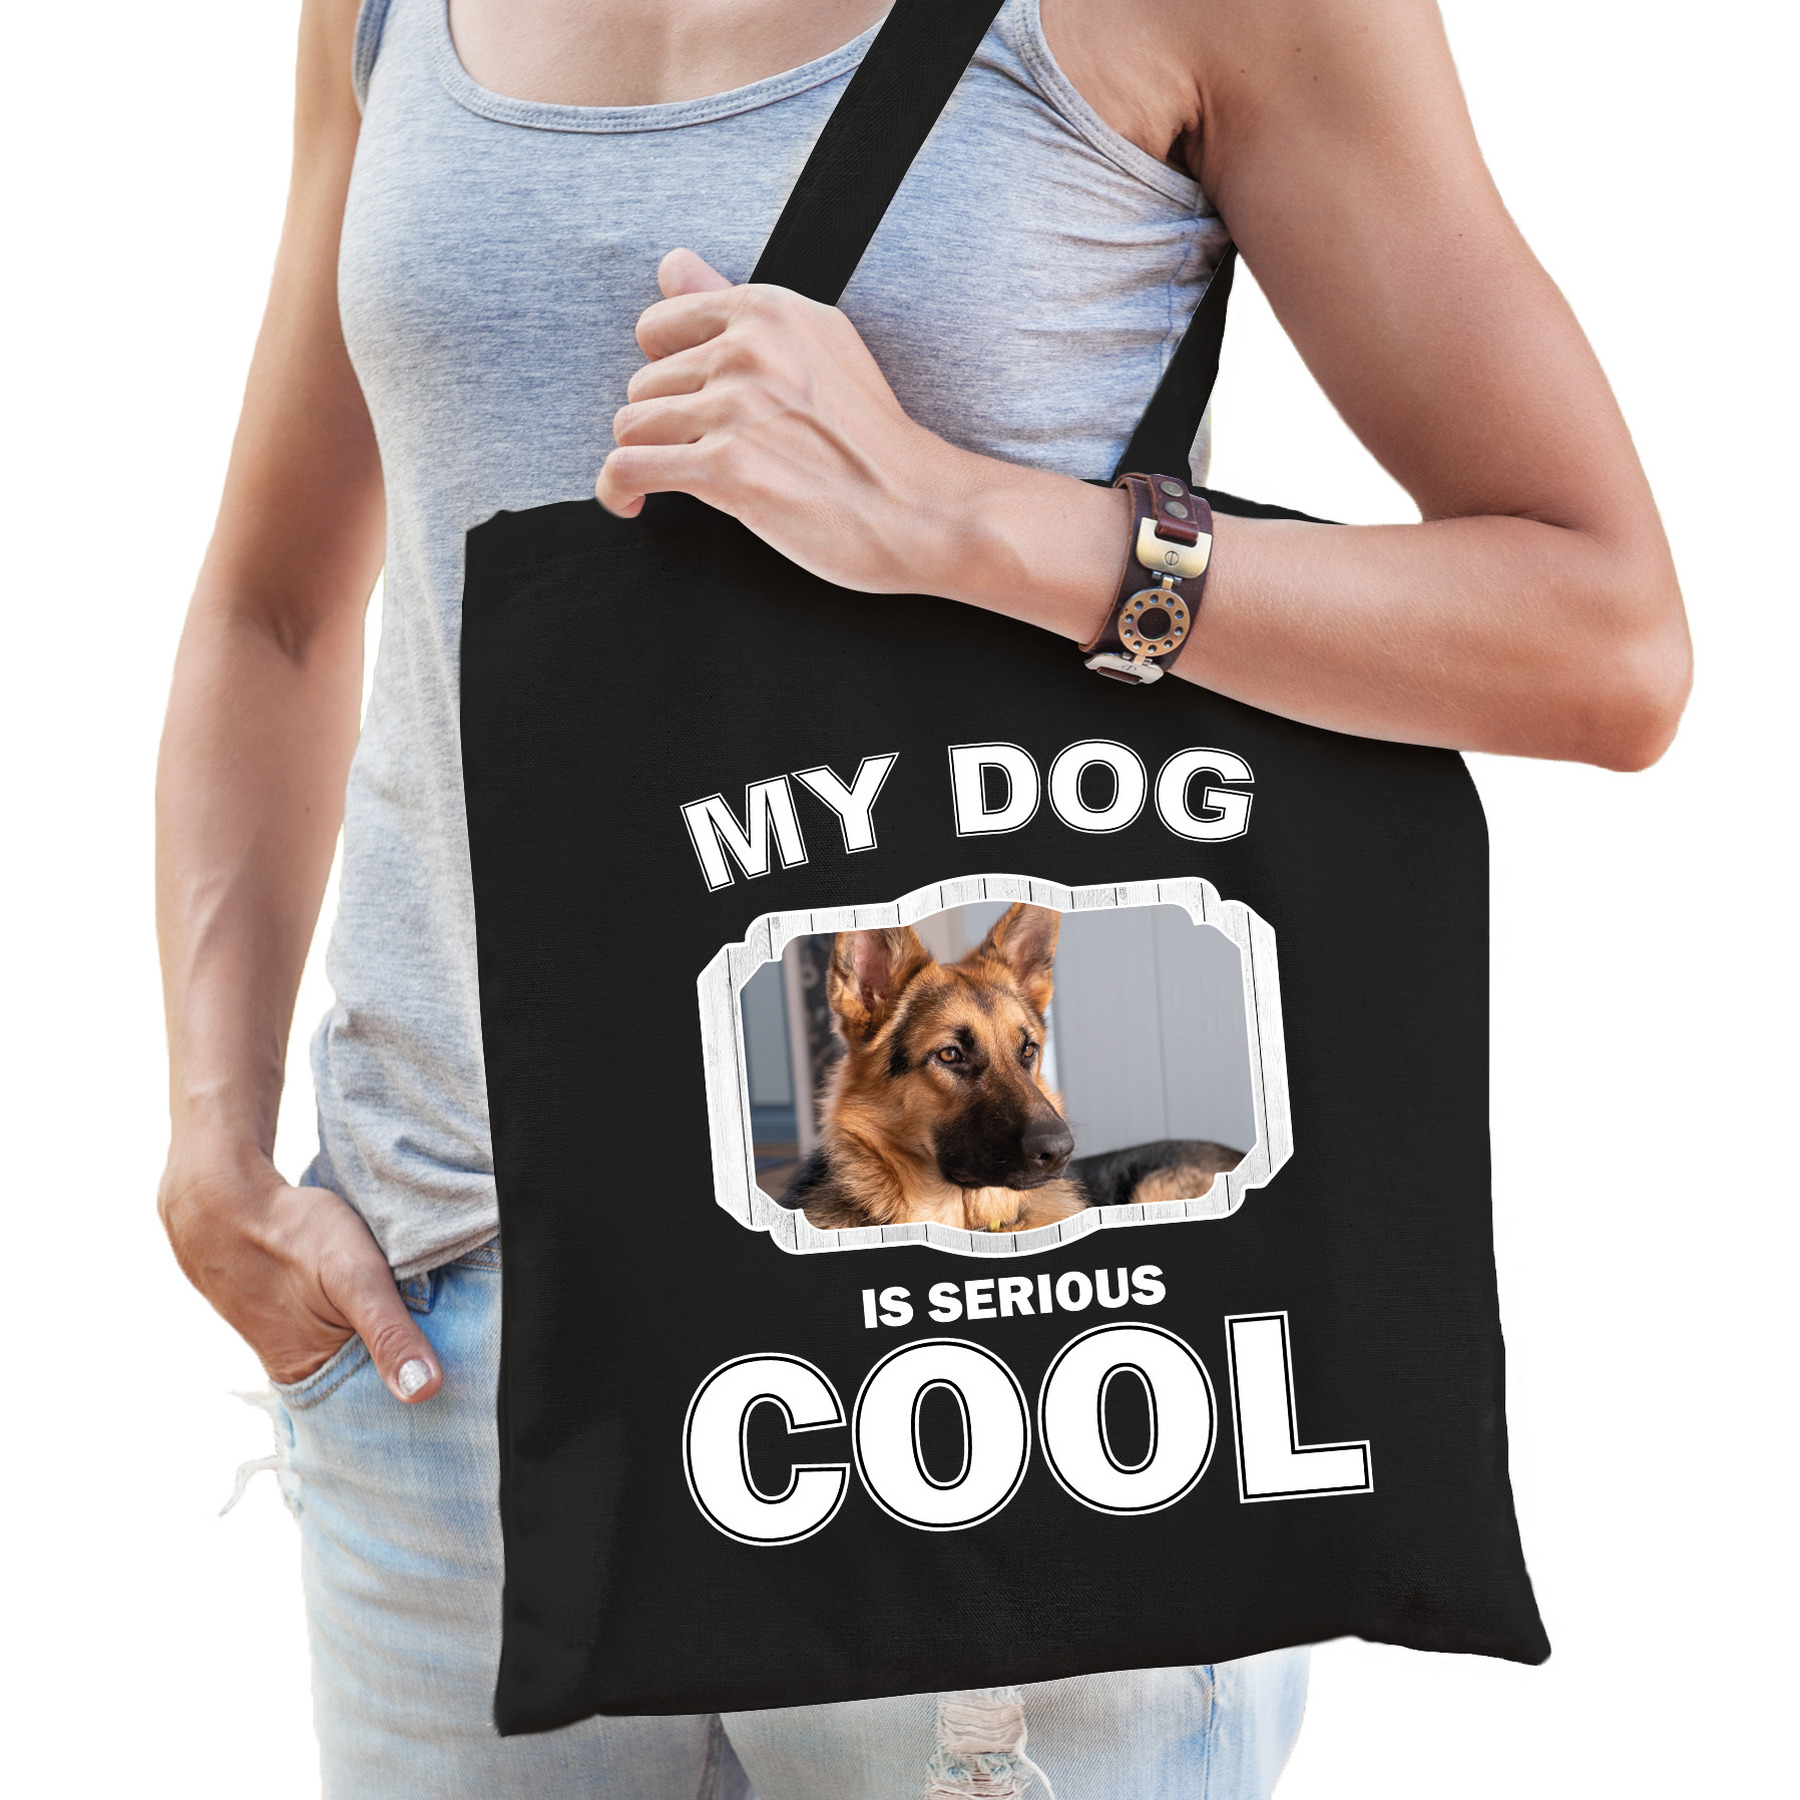 Afbeelding Katoenen tasje my dog is serious cool zwart - Duitse herder honden cadeau tas door Animals Giftshop